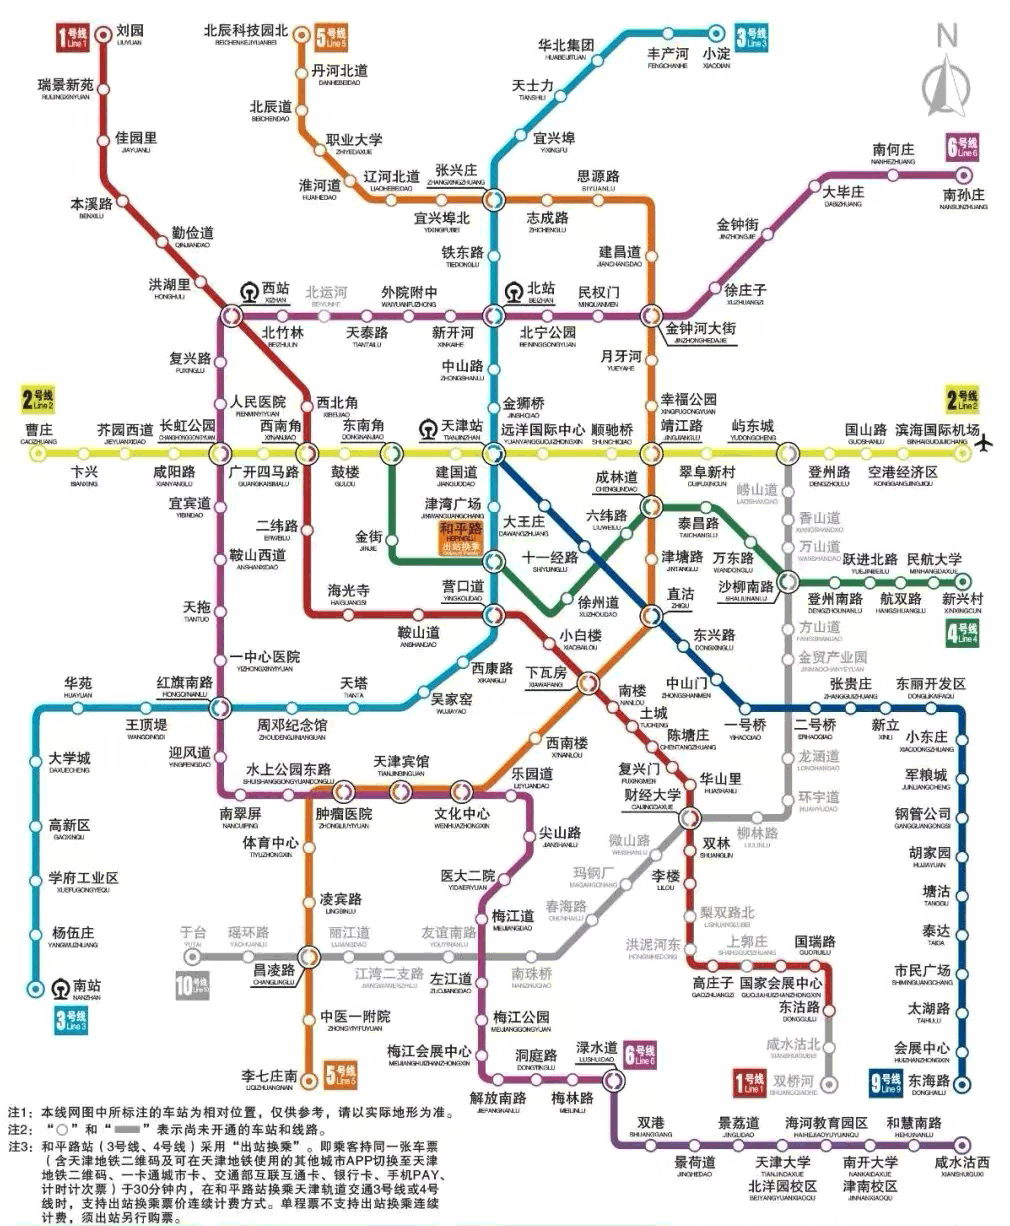 天津地铁线路图 最新天津地铁线路图 天津地铁地图 天津本地宝